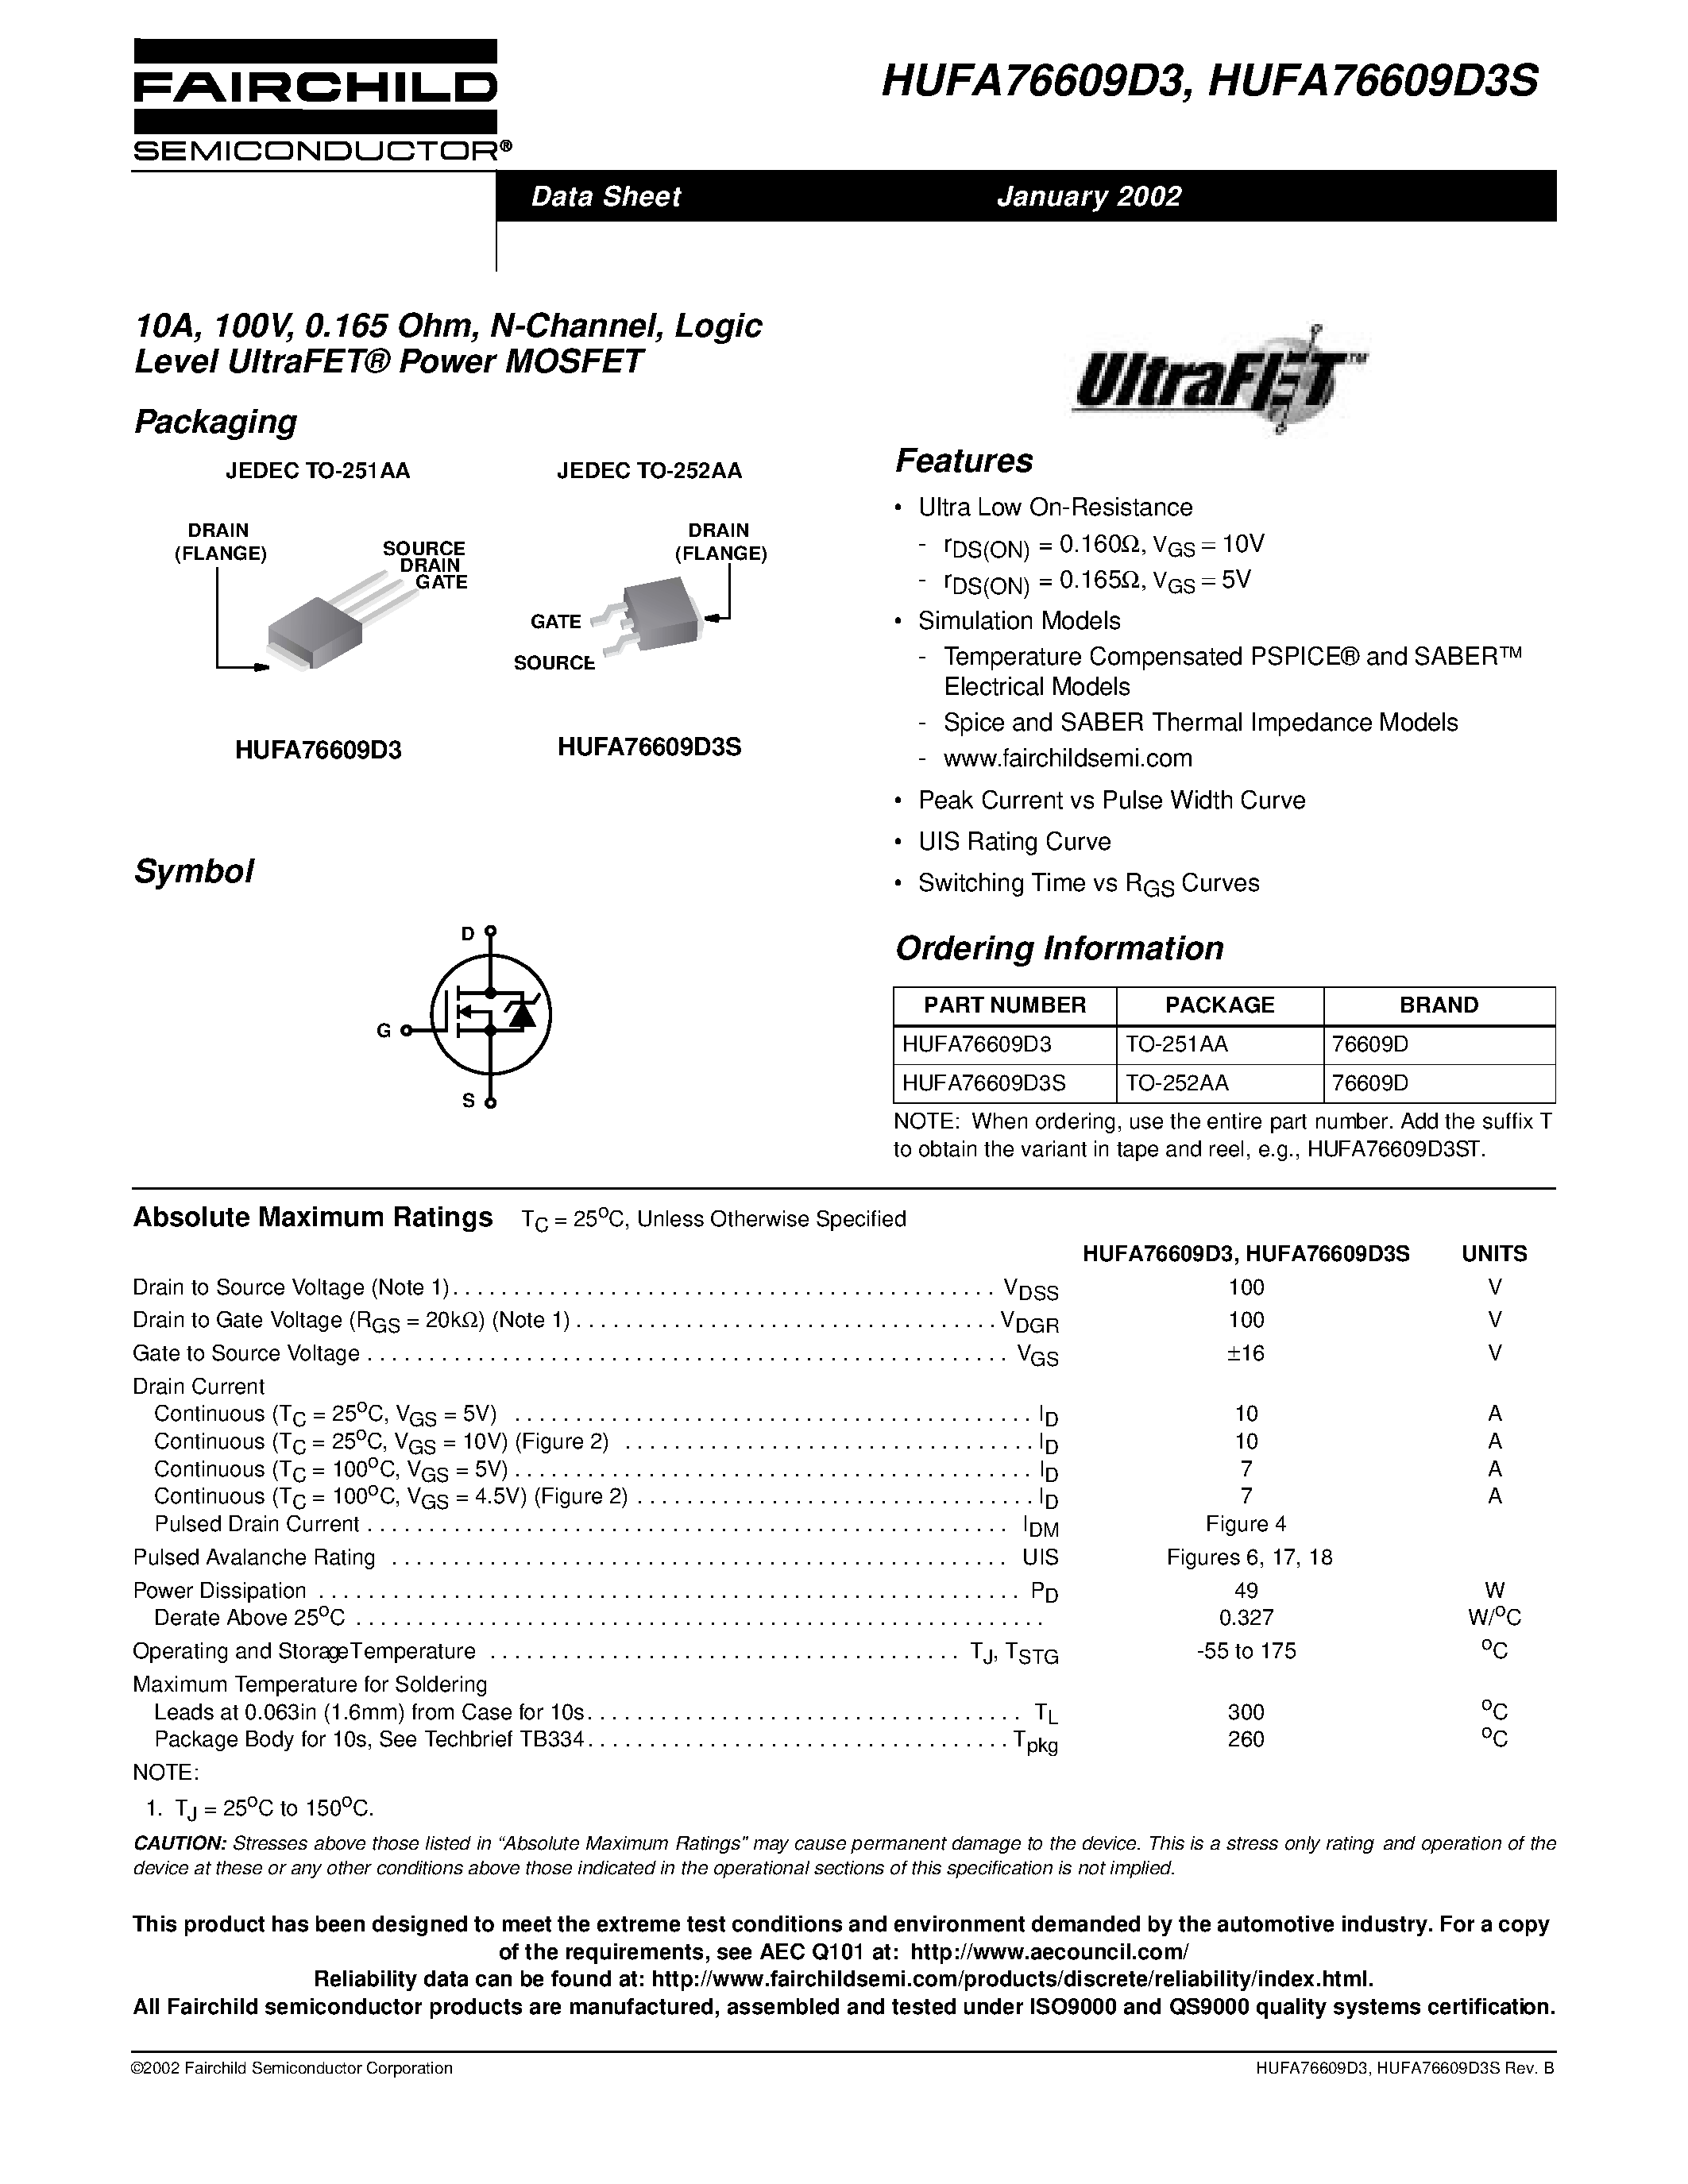 Даташит HUFA76609D3S - 10A/ 100V/ 0.165 Ohm/ N-Channel/ Logic Level UltraFET Power MOSFET страница 1